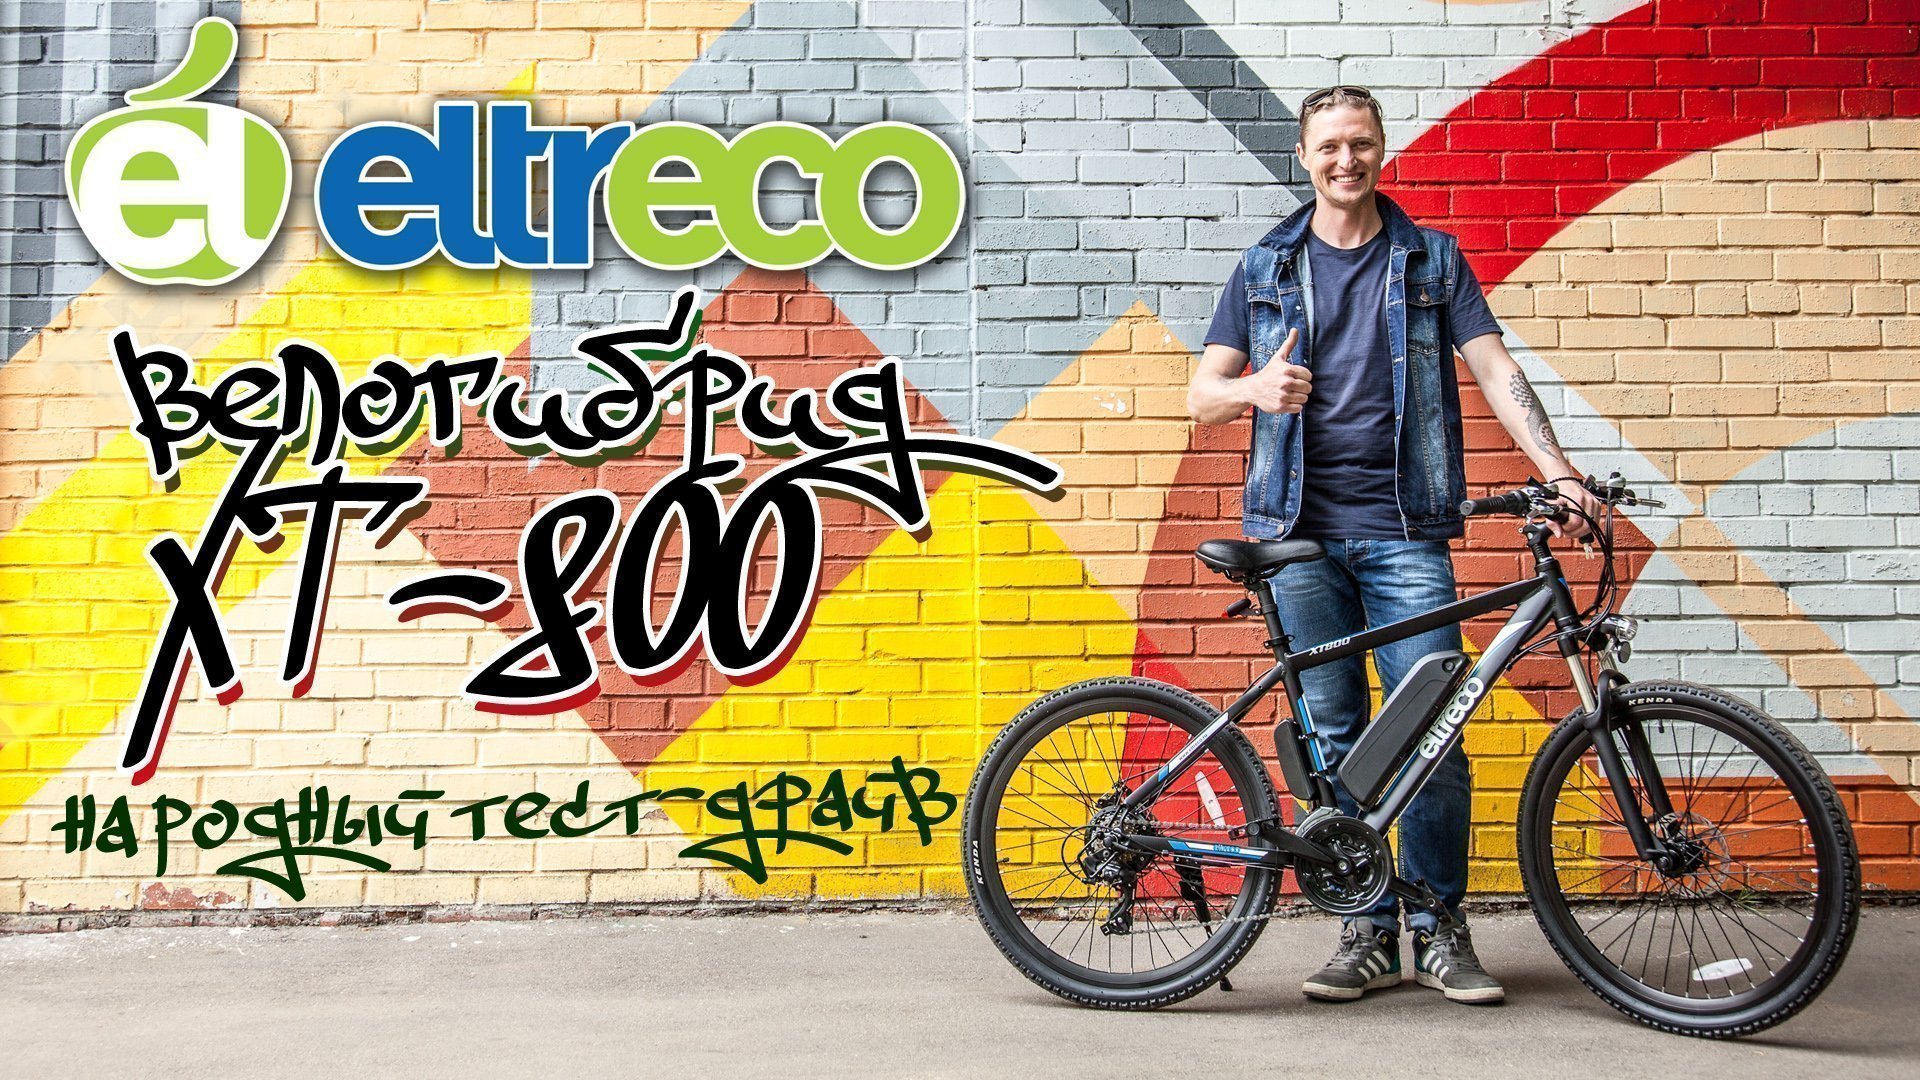 Велогибрид ELTRECO XT-800: мнение людей на улицах Москвы